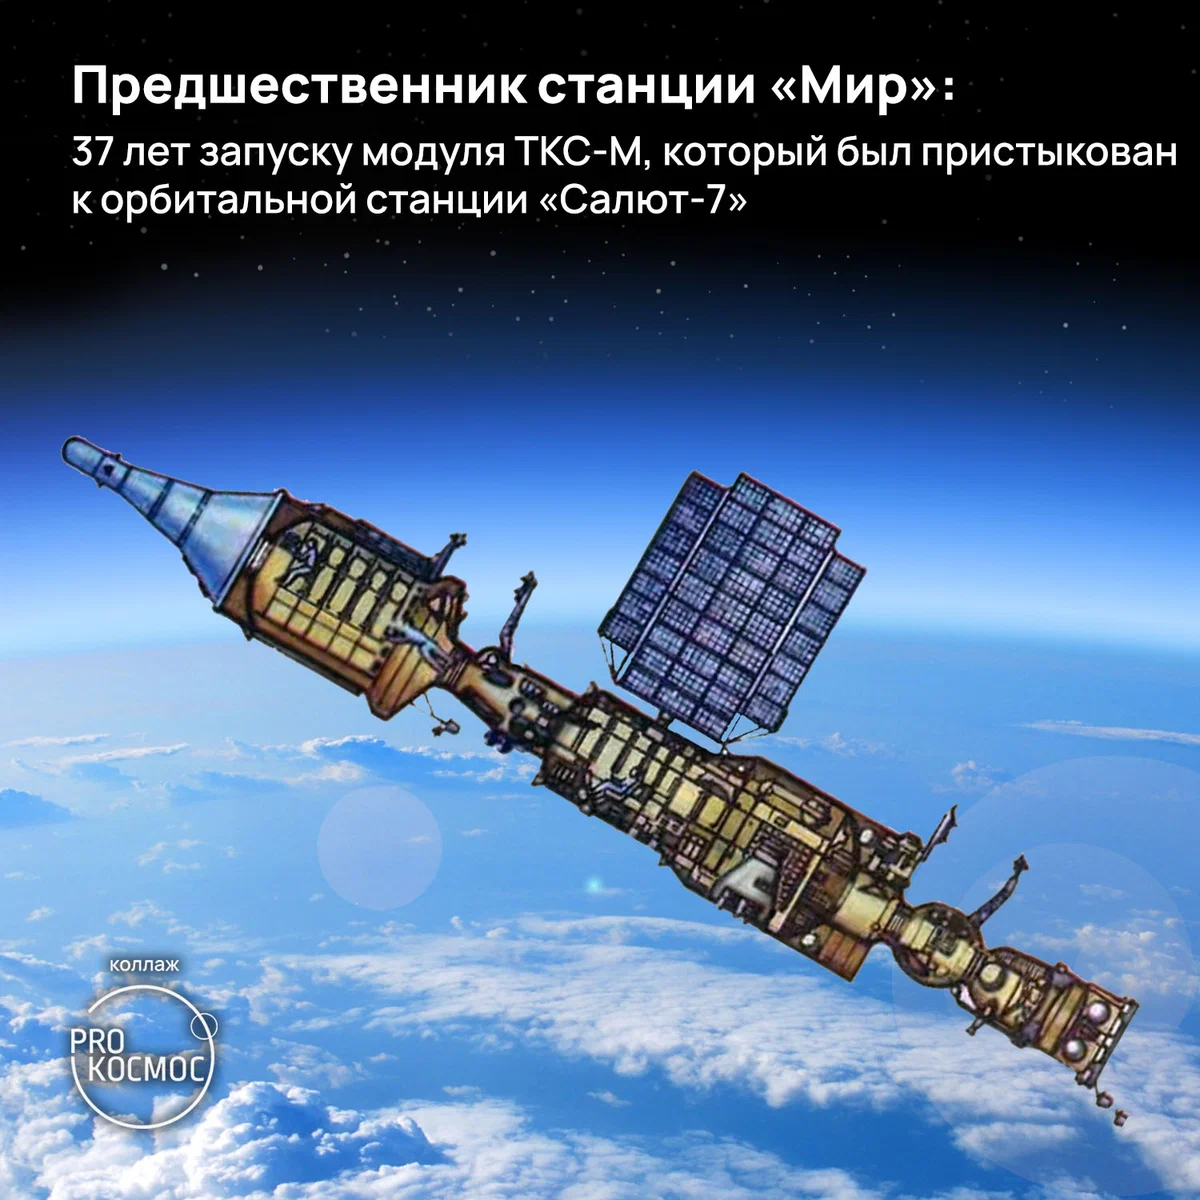 Предшественник станции «Мир»: 37 лет запуску модуля ТКС-М, который был пристыкован к орбитальной станции «Салют-7» height=1200px width=1200px